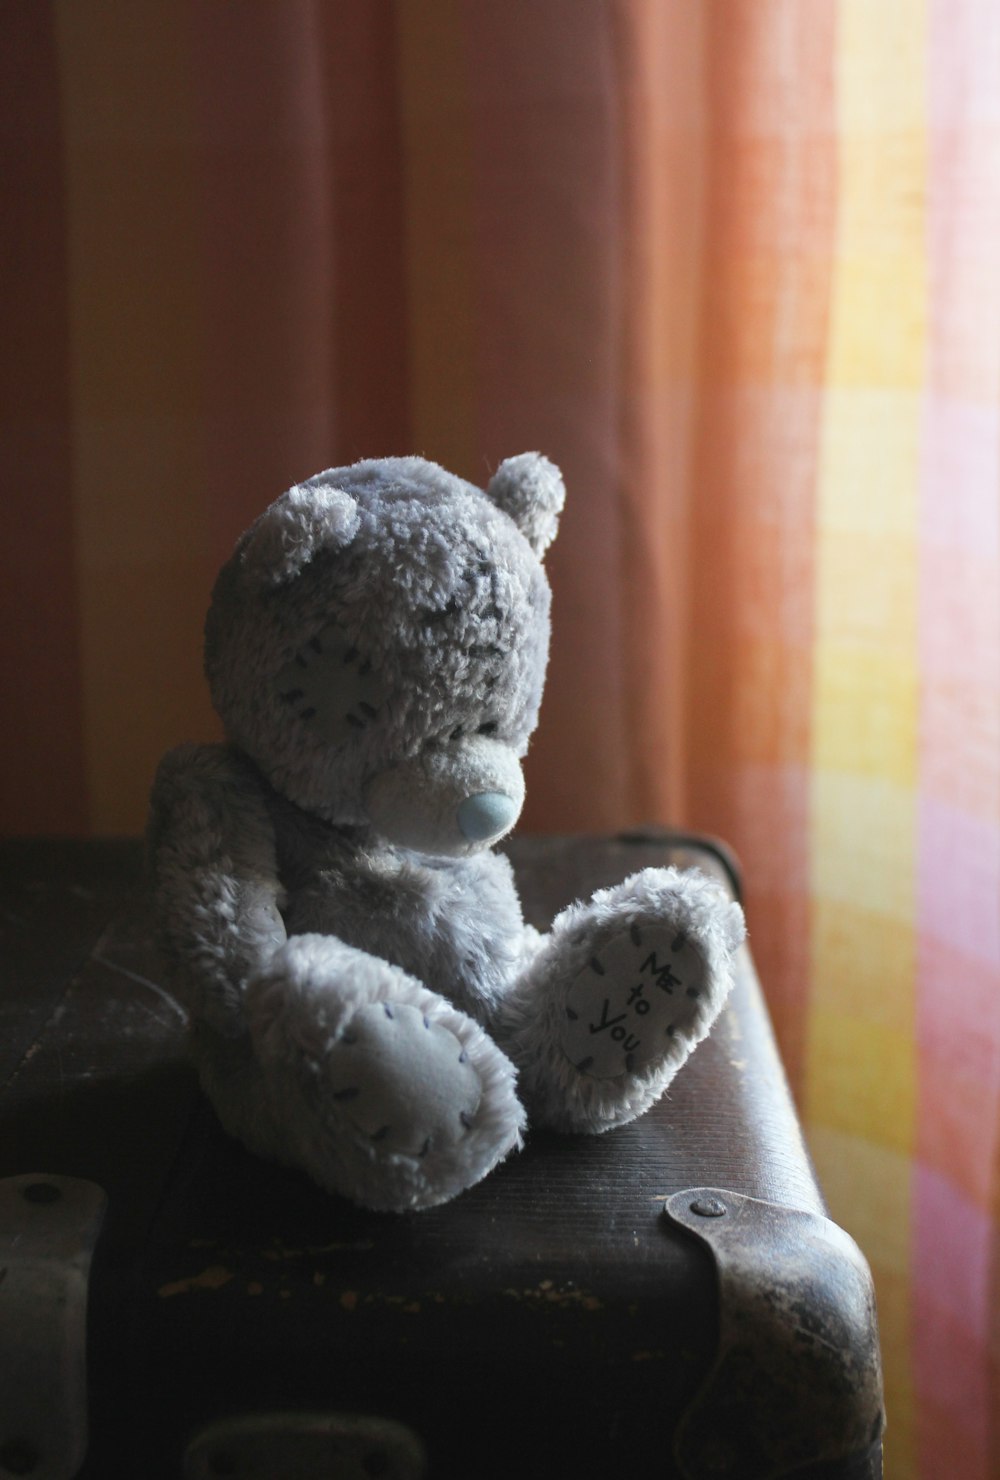 gray teddy bear on black table